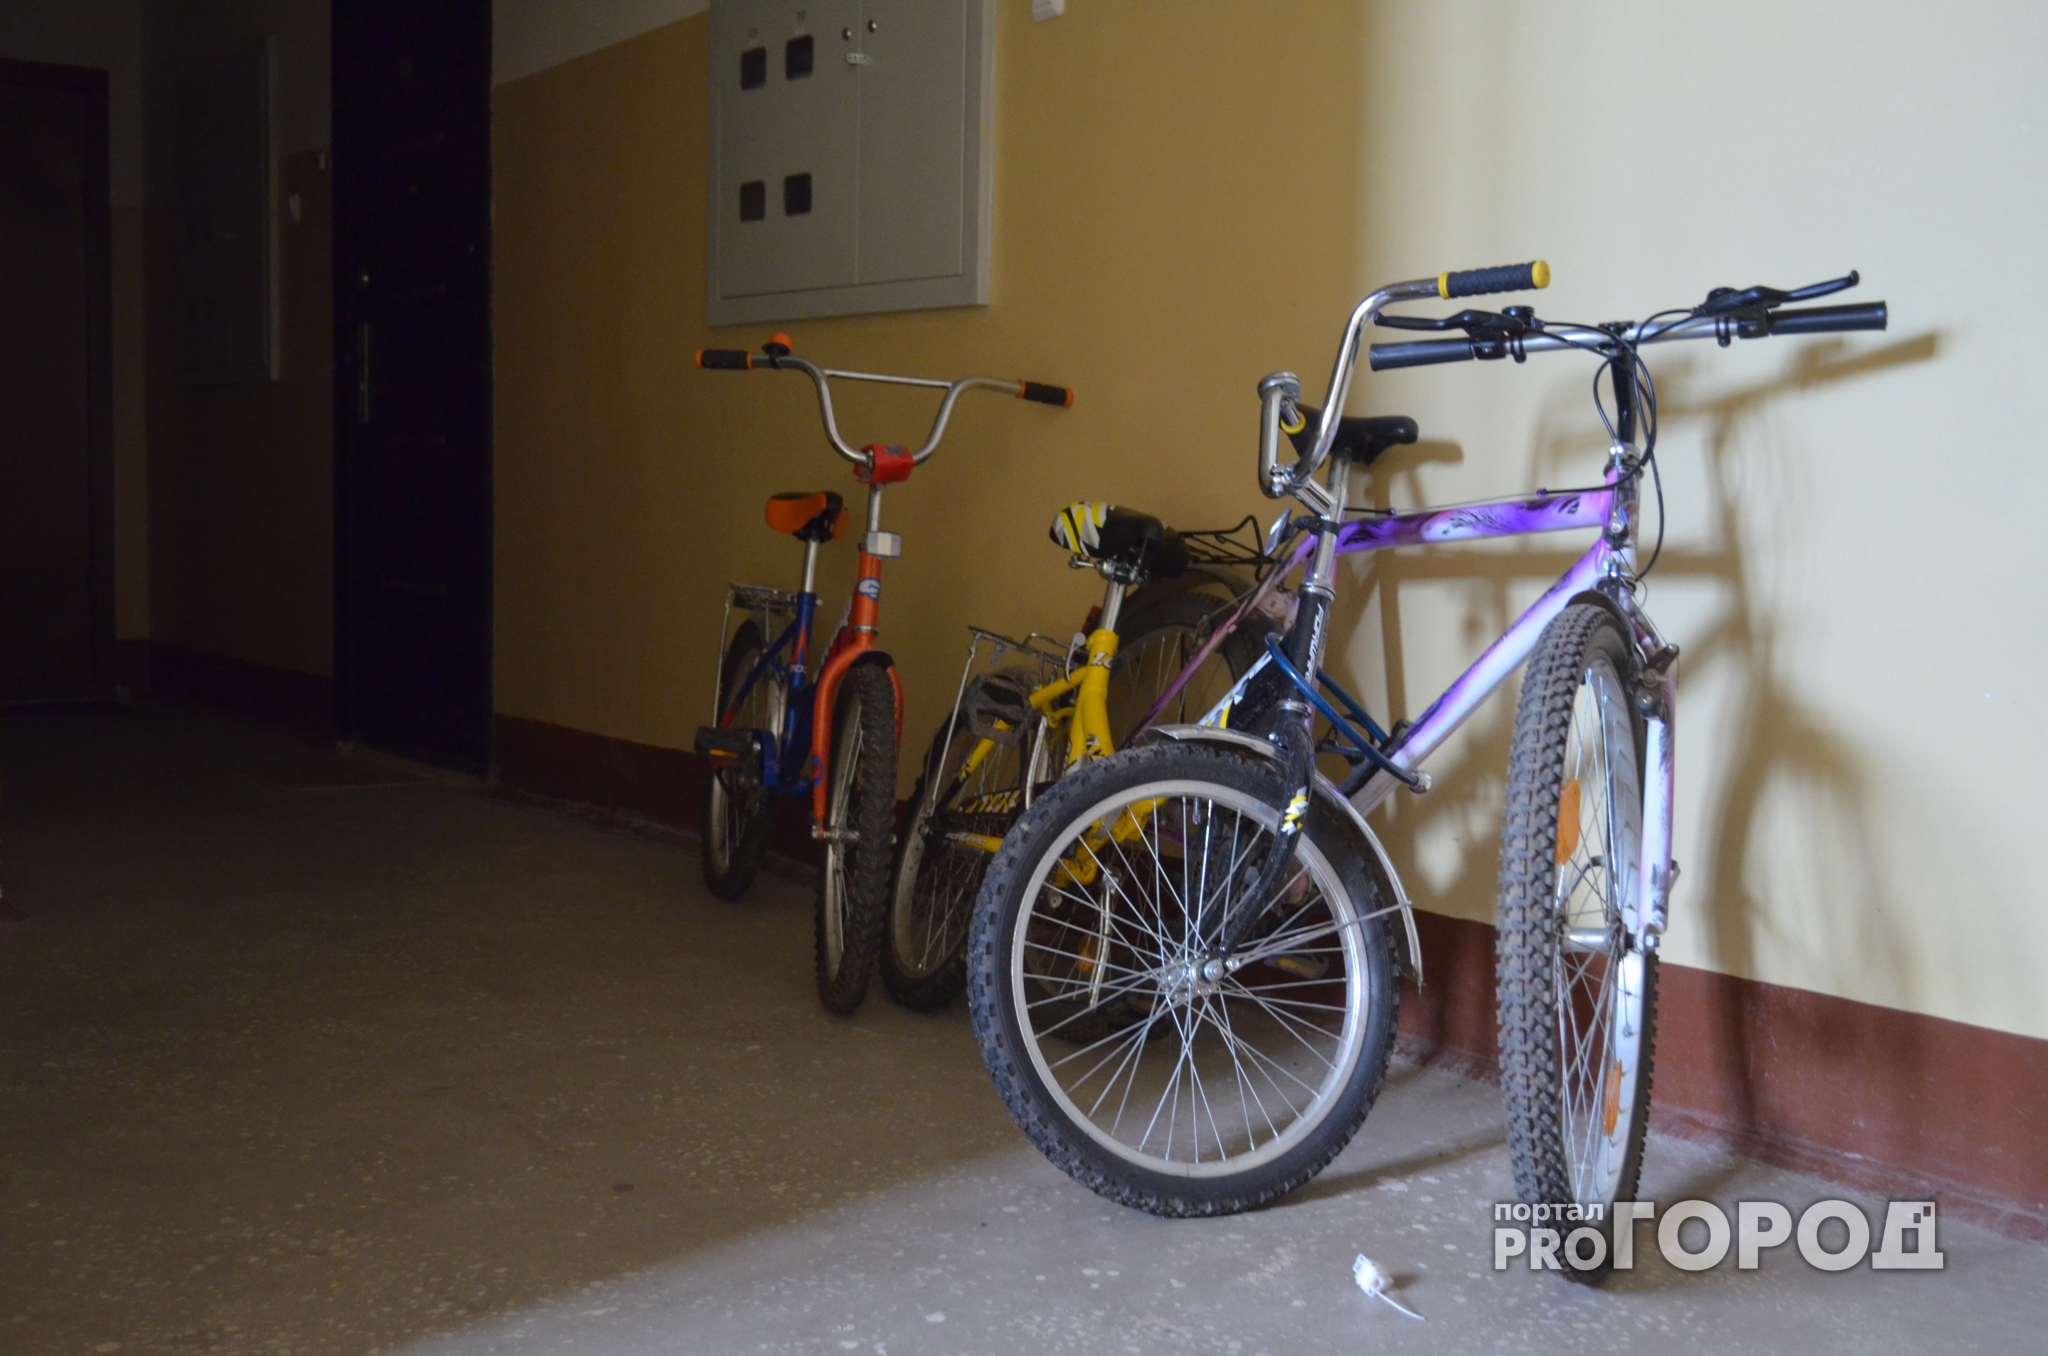 В Йошкар-Оле не пристегнутый велосипед "ушел" с лестничной клетки хозяйки